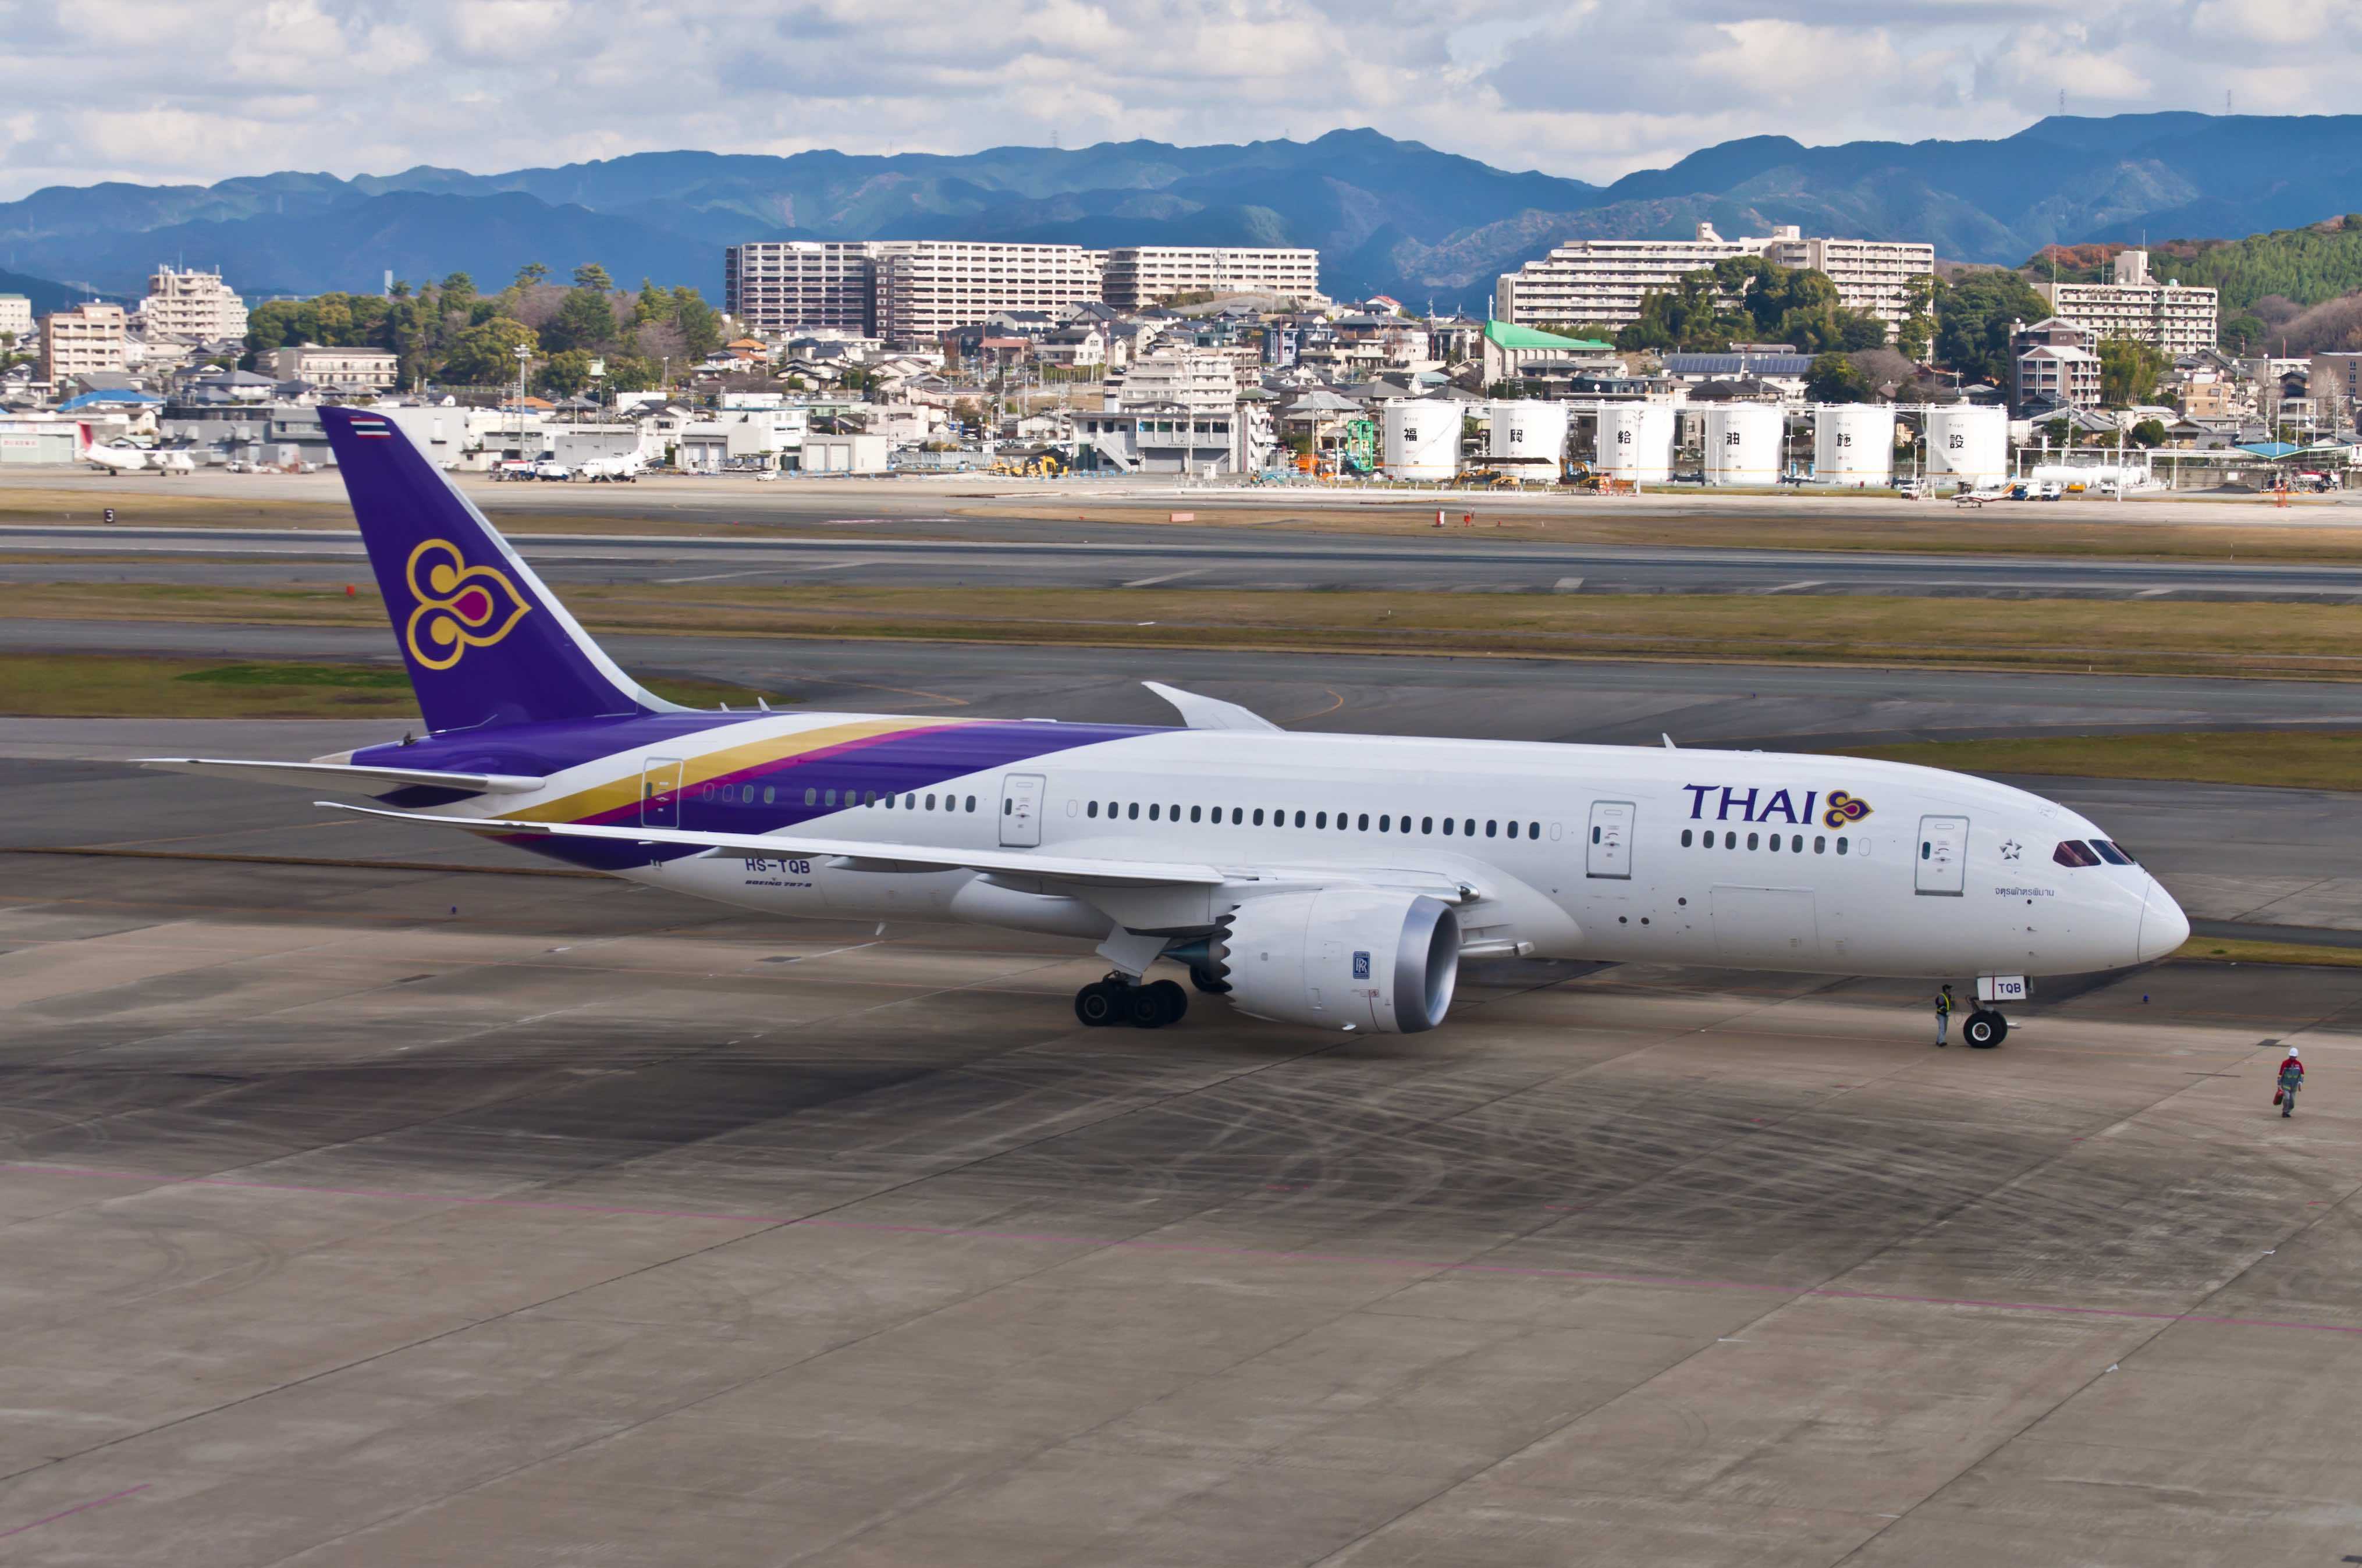 近期去泰国要注意:泰国国际航班新规 登机前后须核酸检测